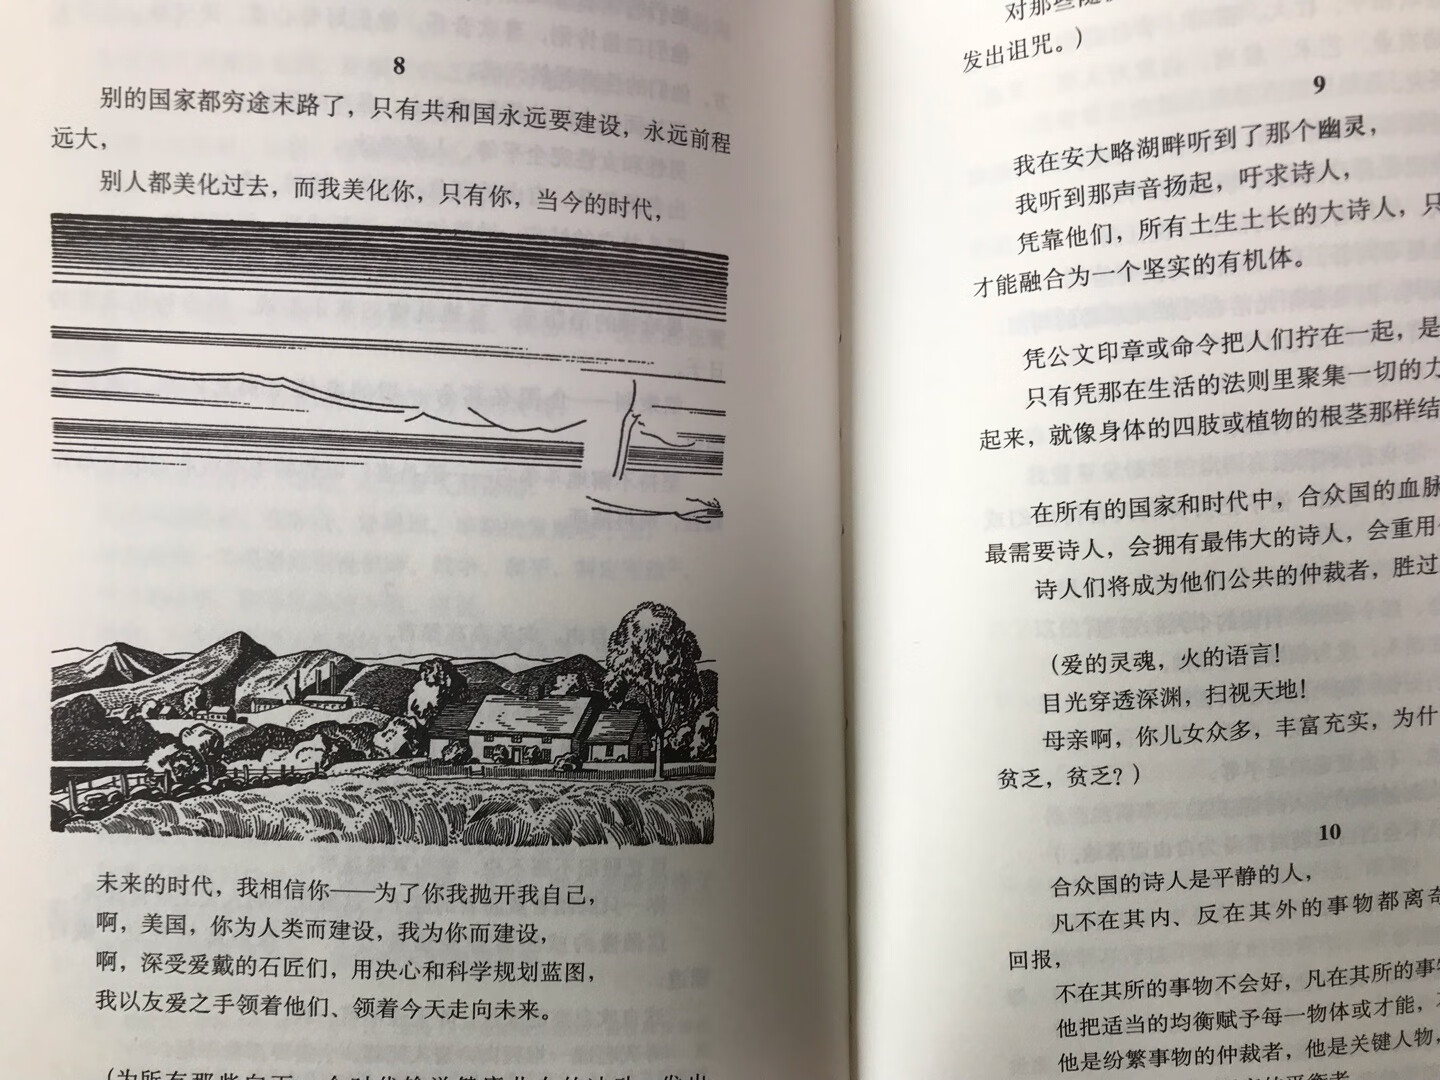 从没有奢望中译本《草叶集》会出现这样一个经典的版本，感谢上海译文出版社的策划和编辑，让中文版本的世界文学名著有了令人垂青的版本！